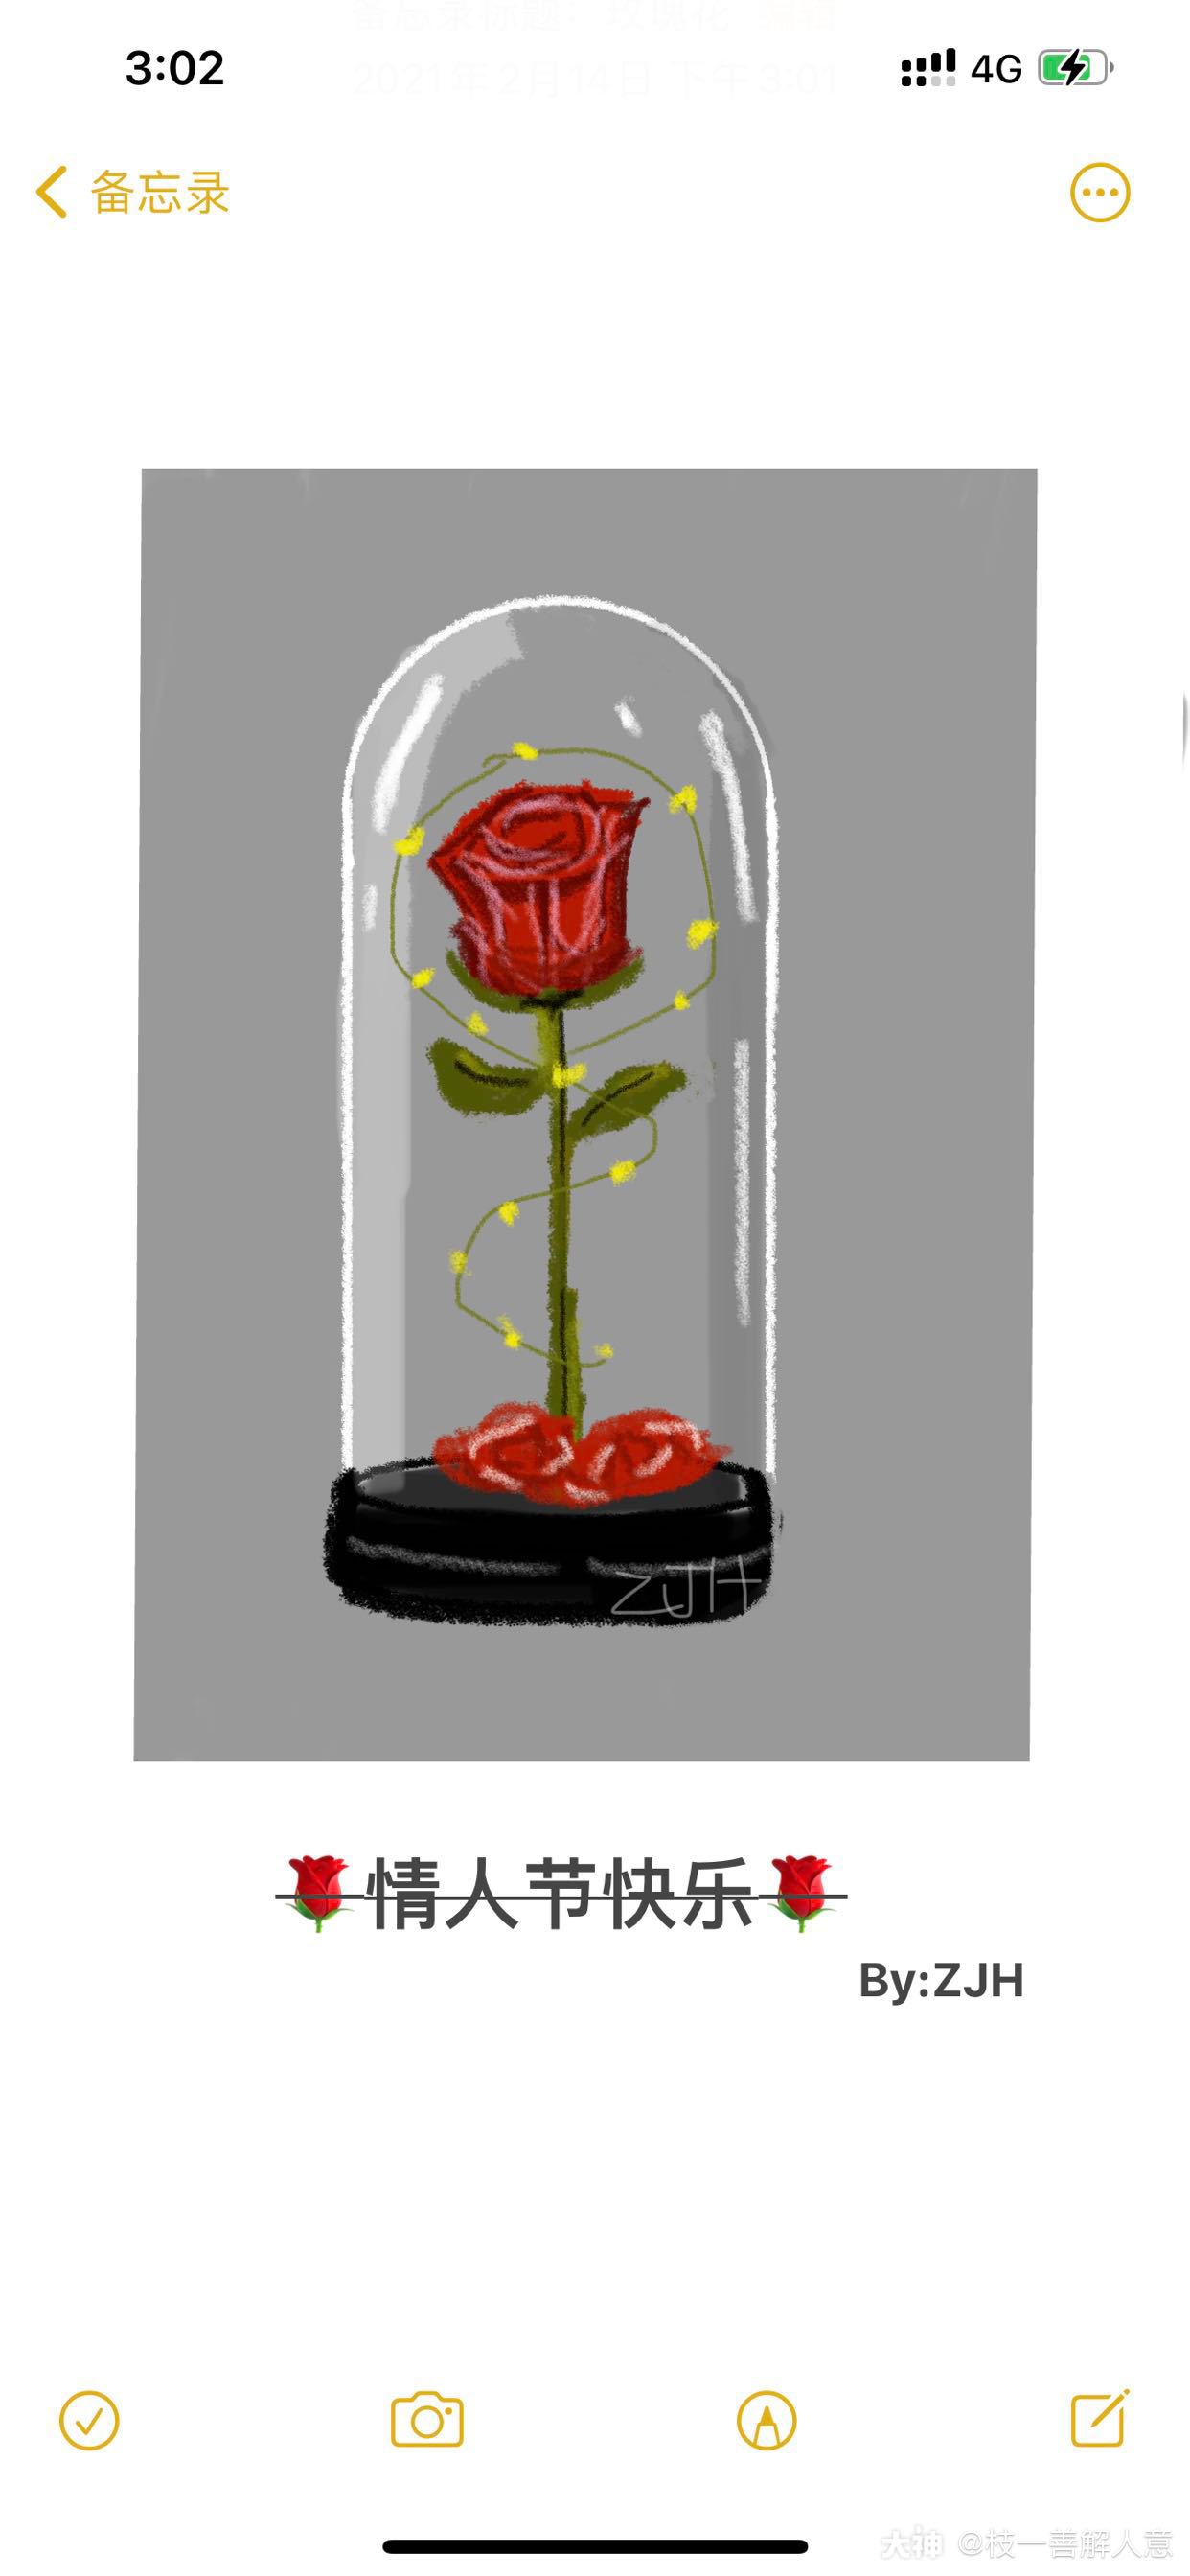 自己备忘录画了朵玫瑰花送给你们情人节快乐